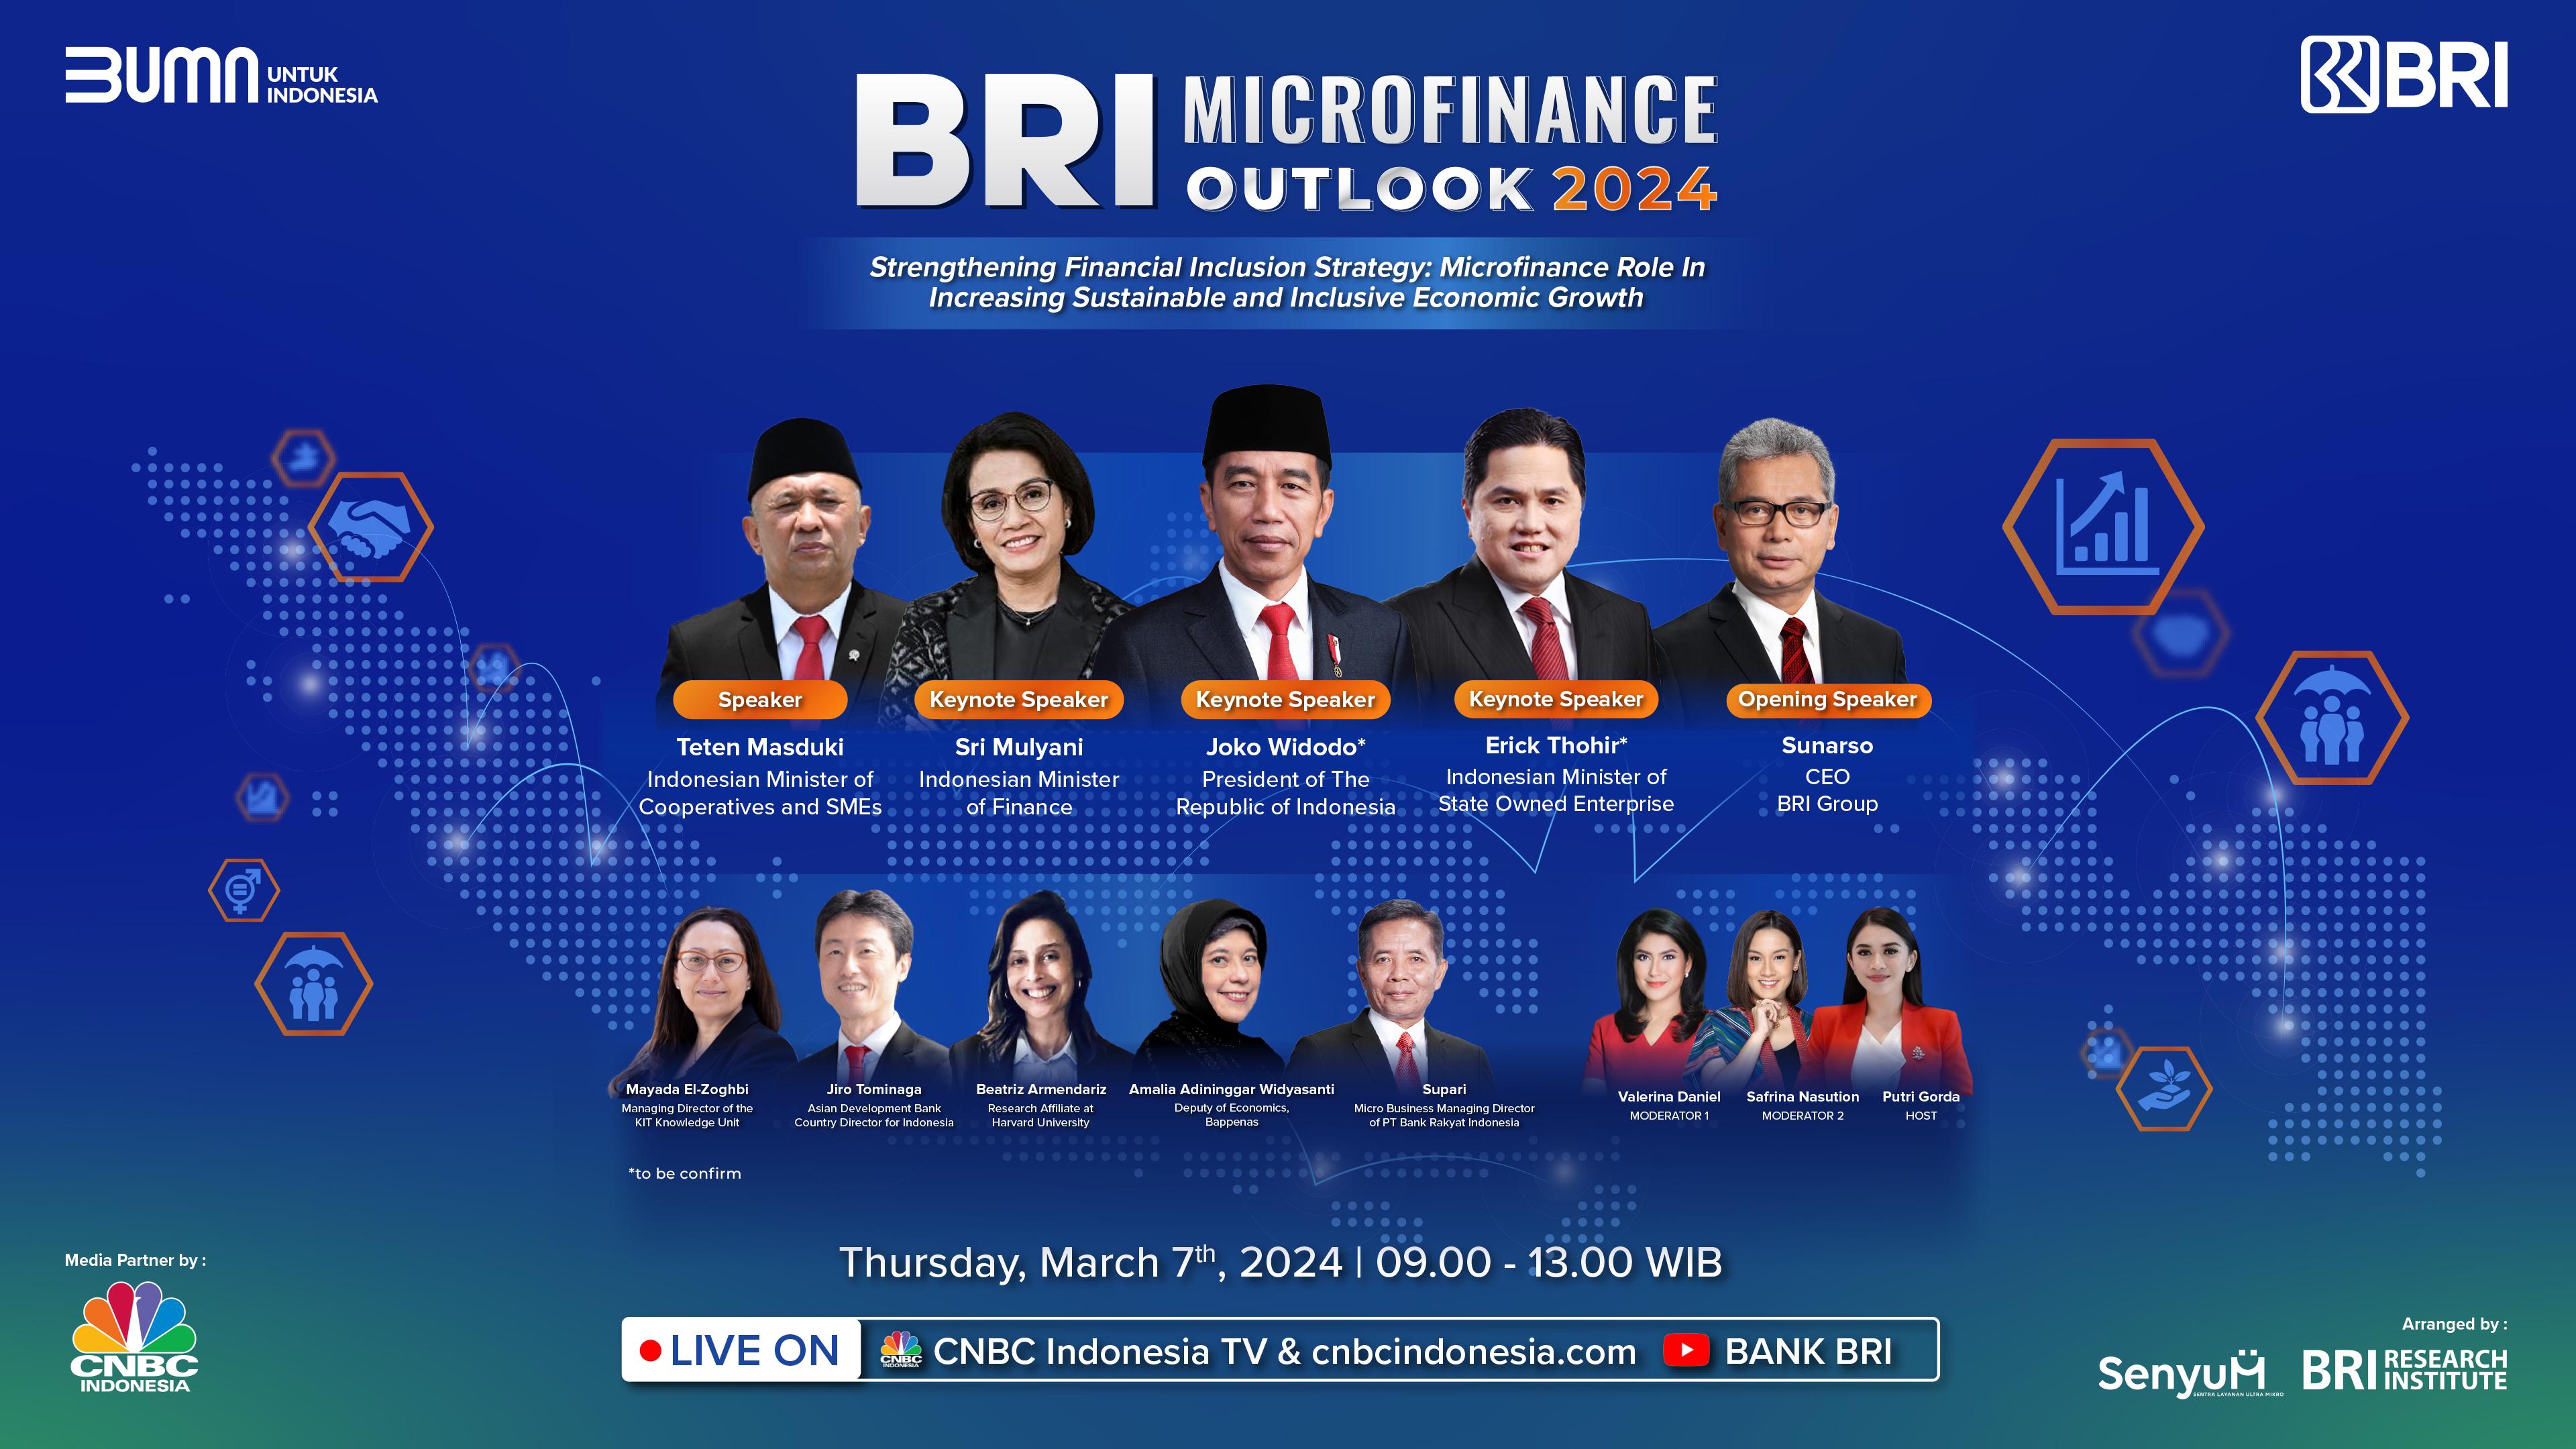 Kembali Diselenggarakan, BRI Microfinance Outlook 2024 Angkat Strategi Memperkuat Inklusi Keuangan untuk Pertu